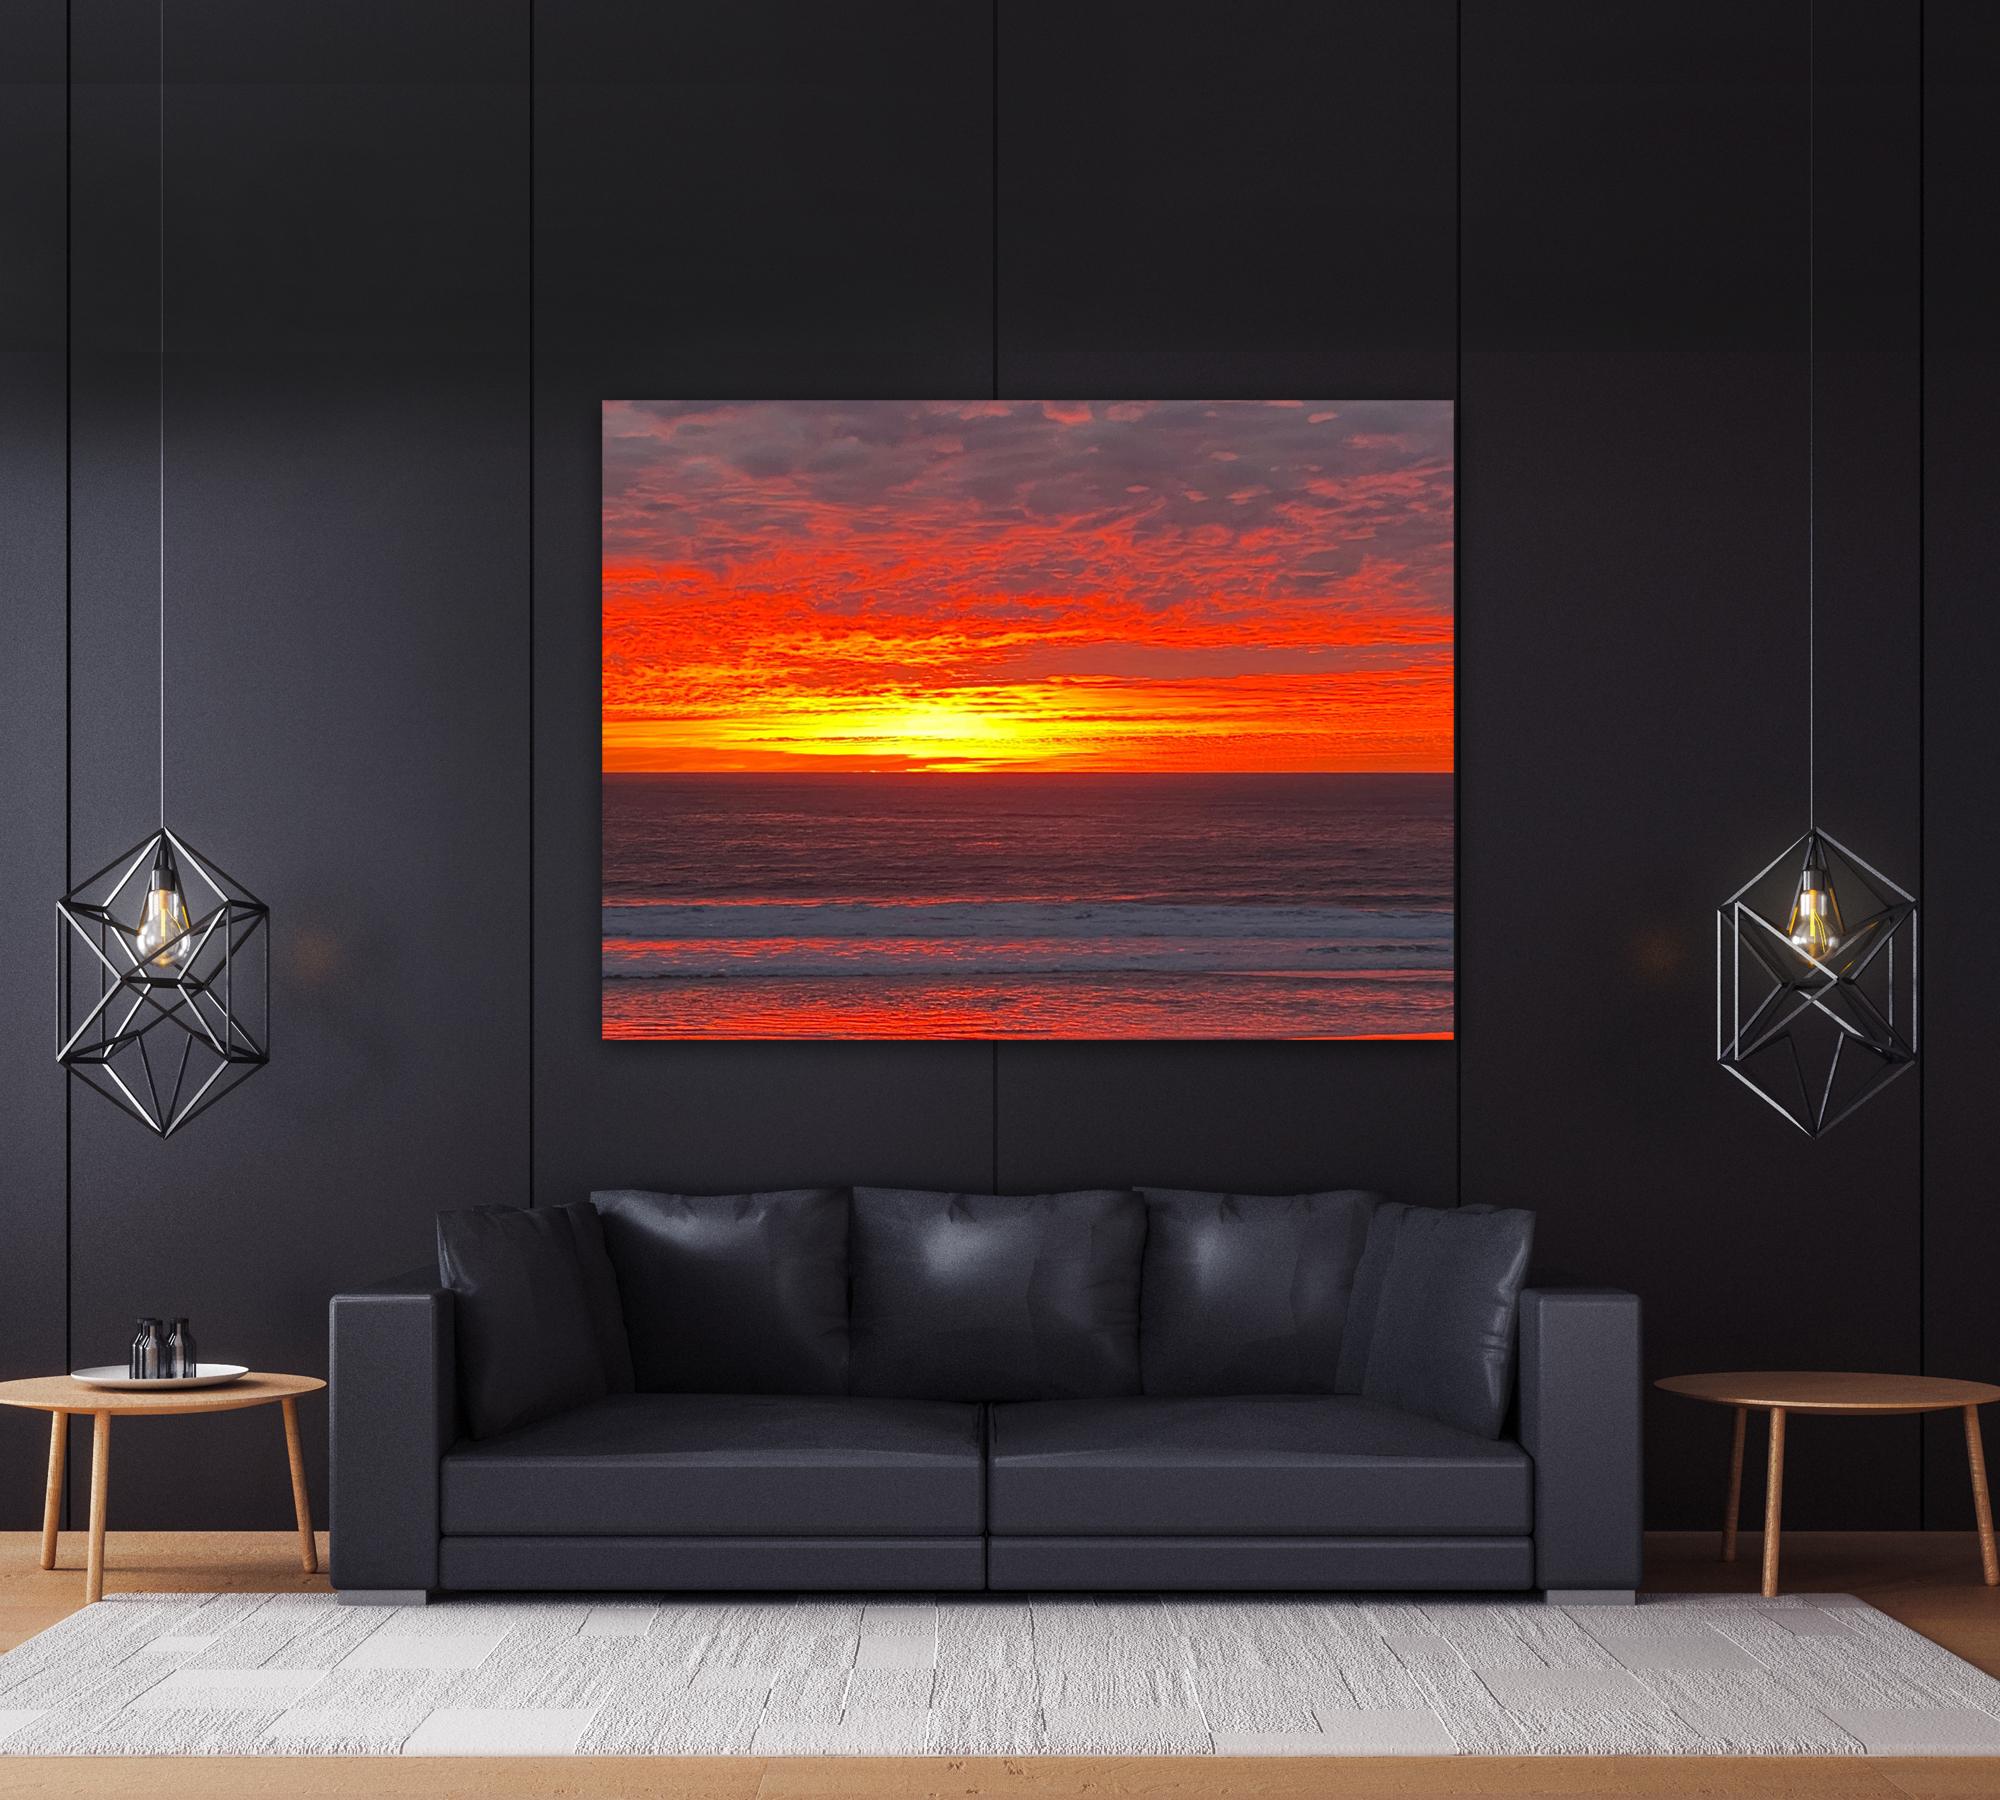 Sonnenuntergang über dem Ozean, große Fotografie, Meereslandschaft  Auf Leinwand  1/10 – Photograph von O Devan